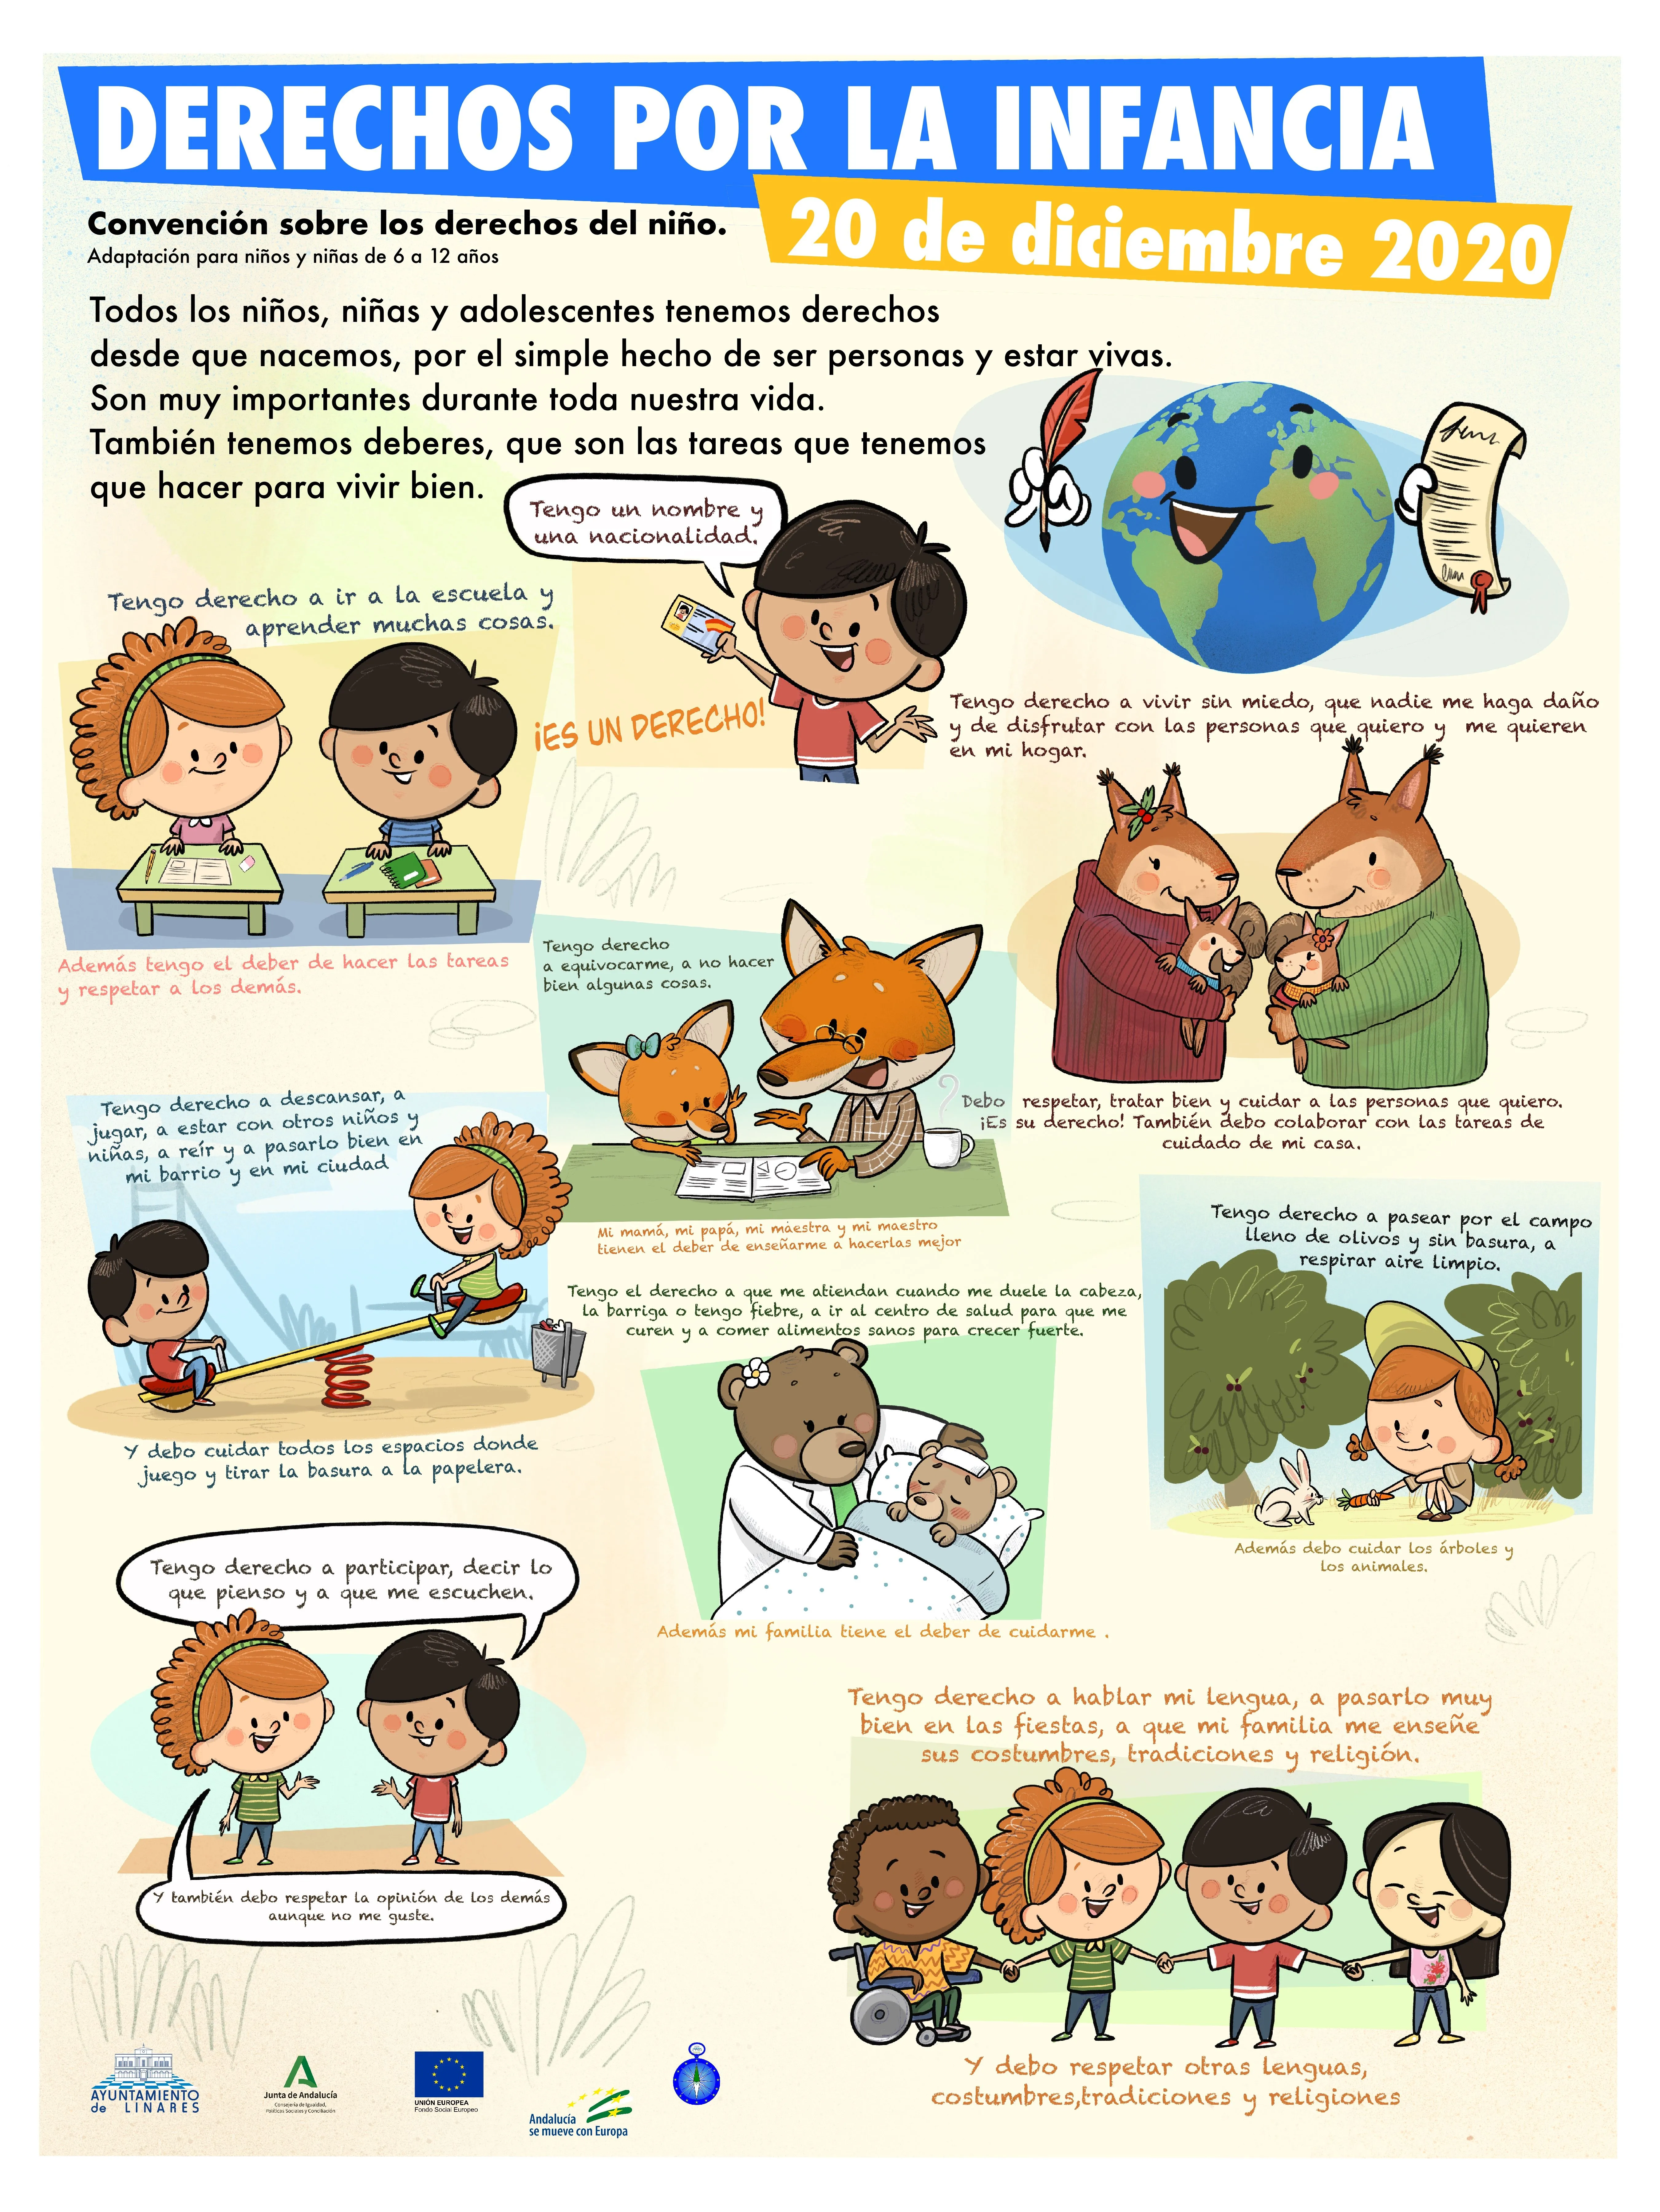 Ilustraciones para conmemorar el día mundial de la infancia en Linares